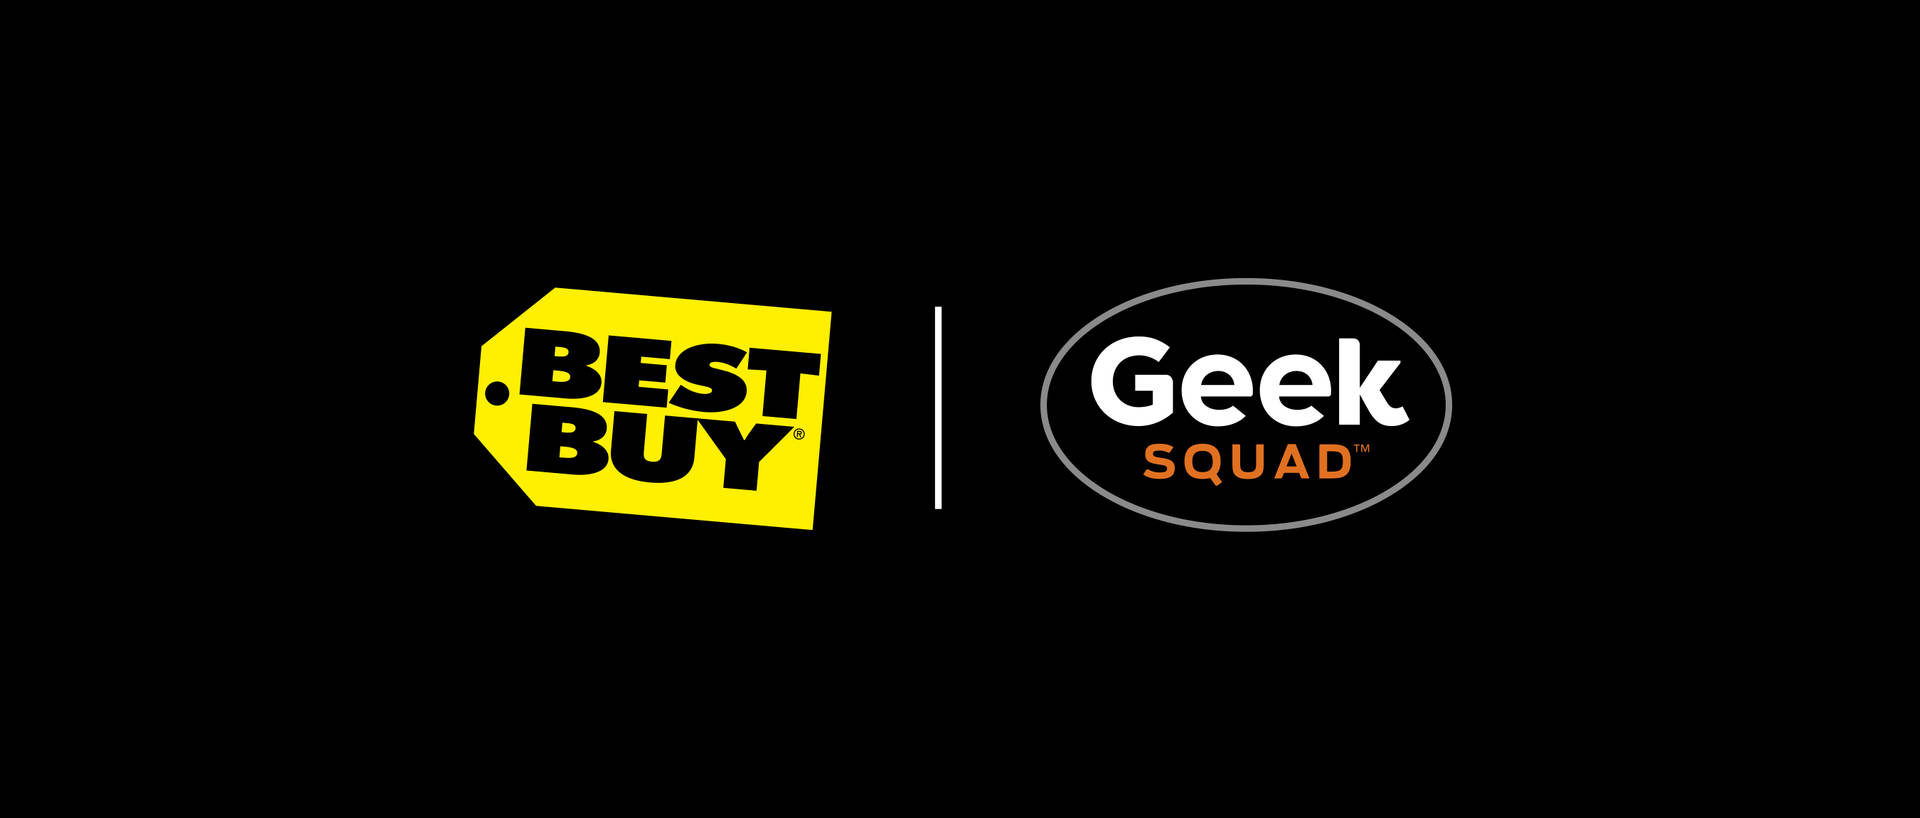 Køb Geek Squad Tapet: Få den ultimative Geek Squad-oplevelse med dette uovertrufne Geek Squad-tapet! Wallpaper